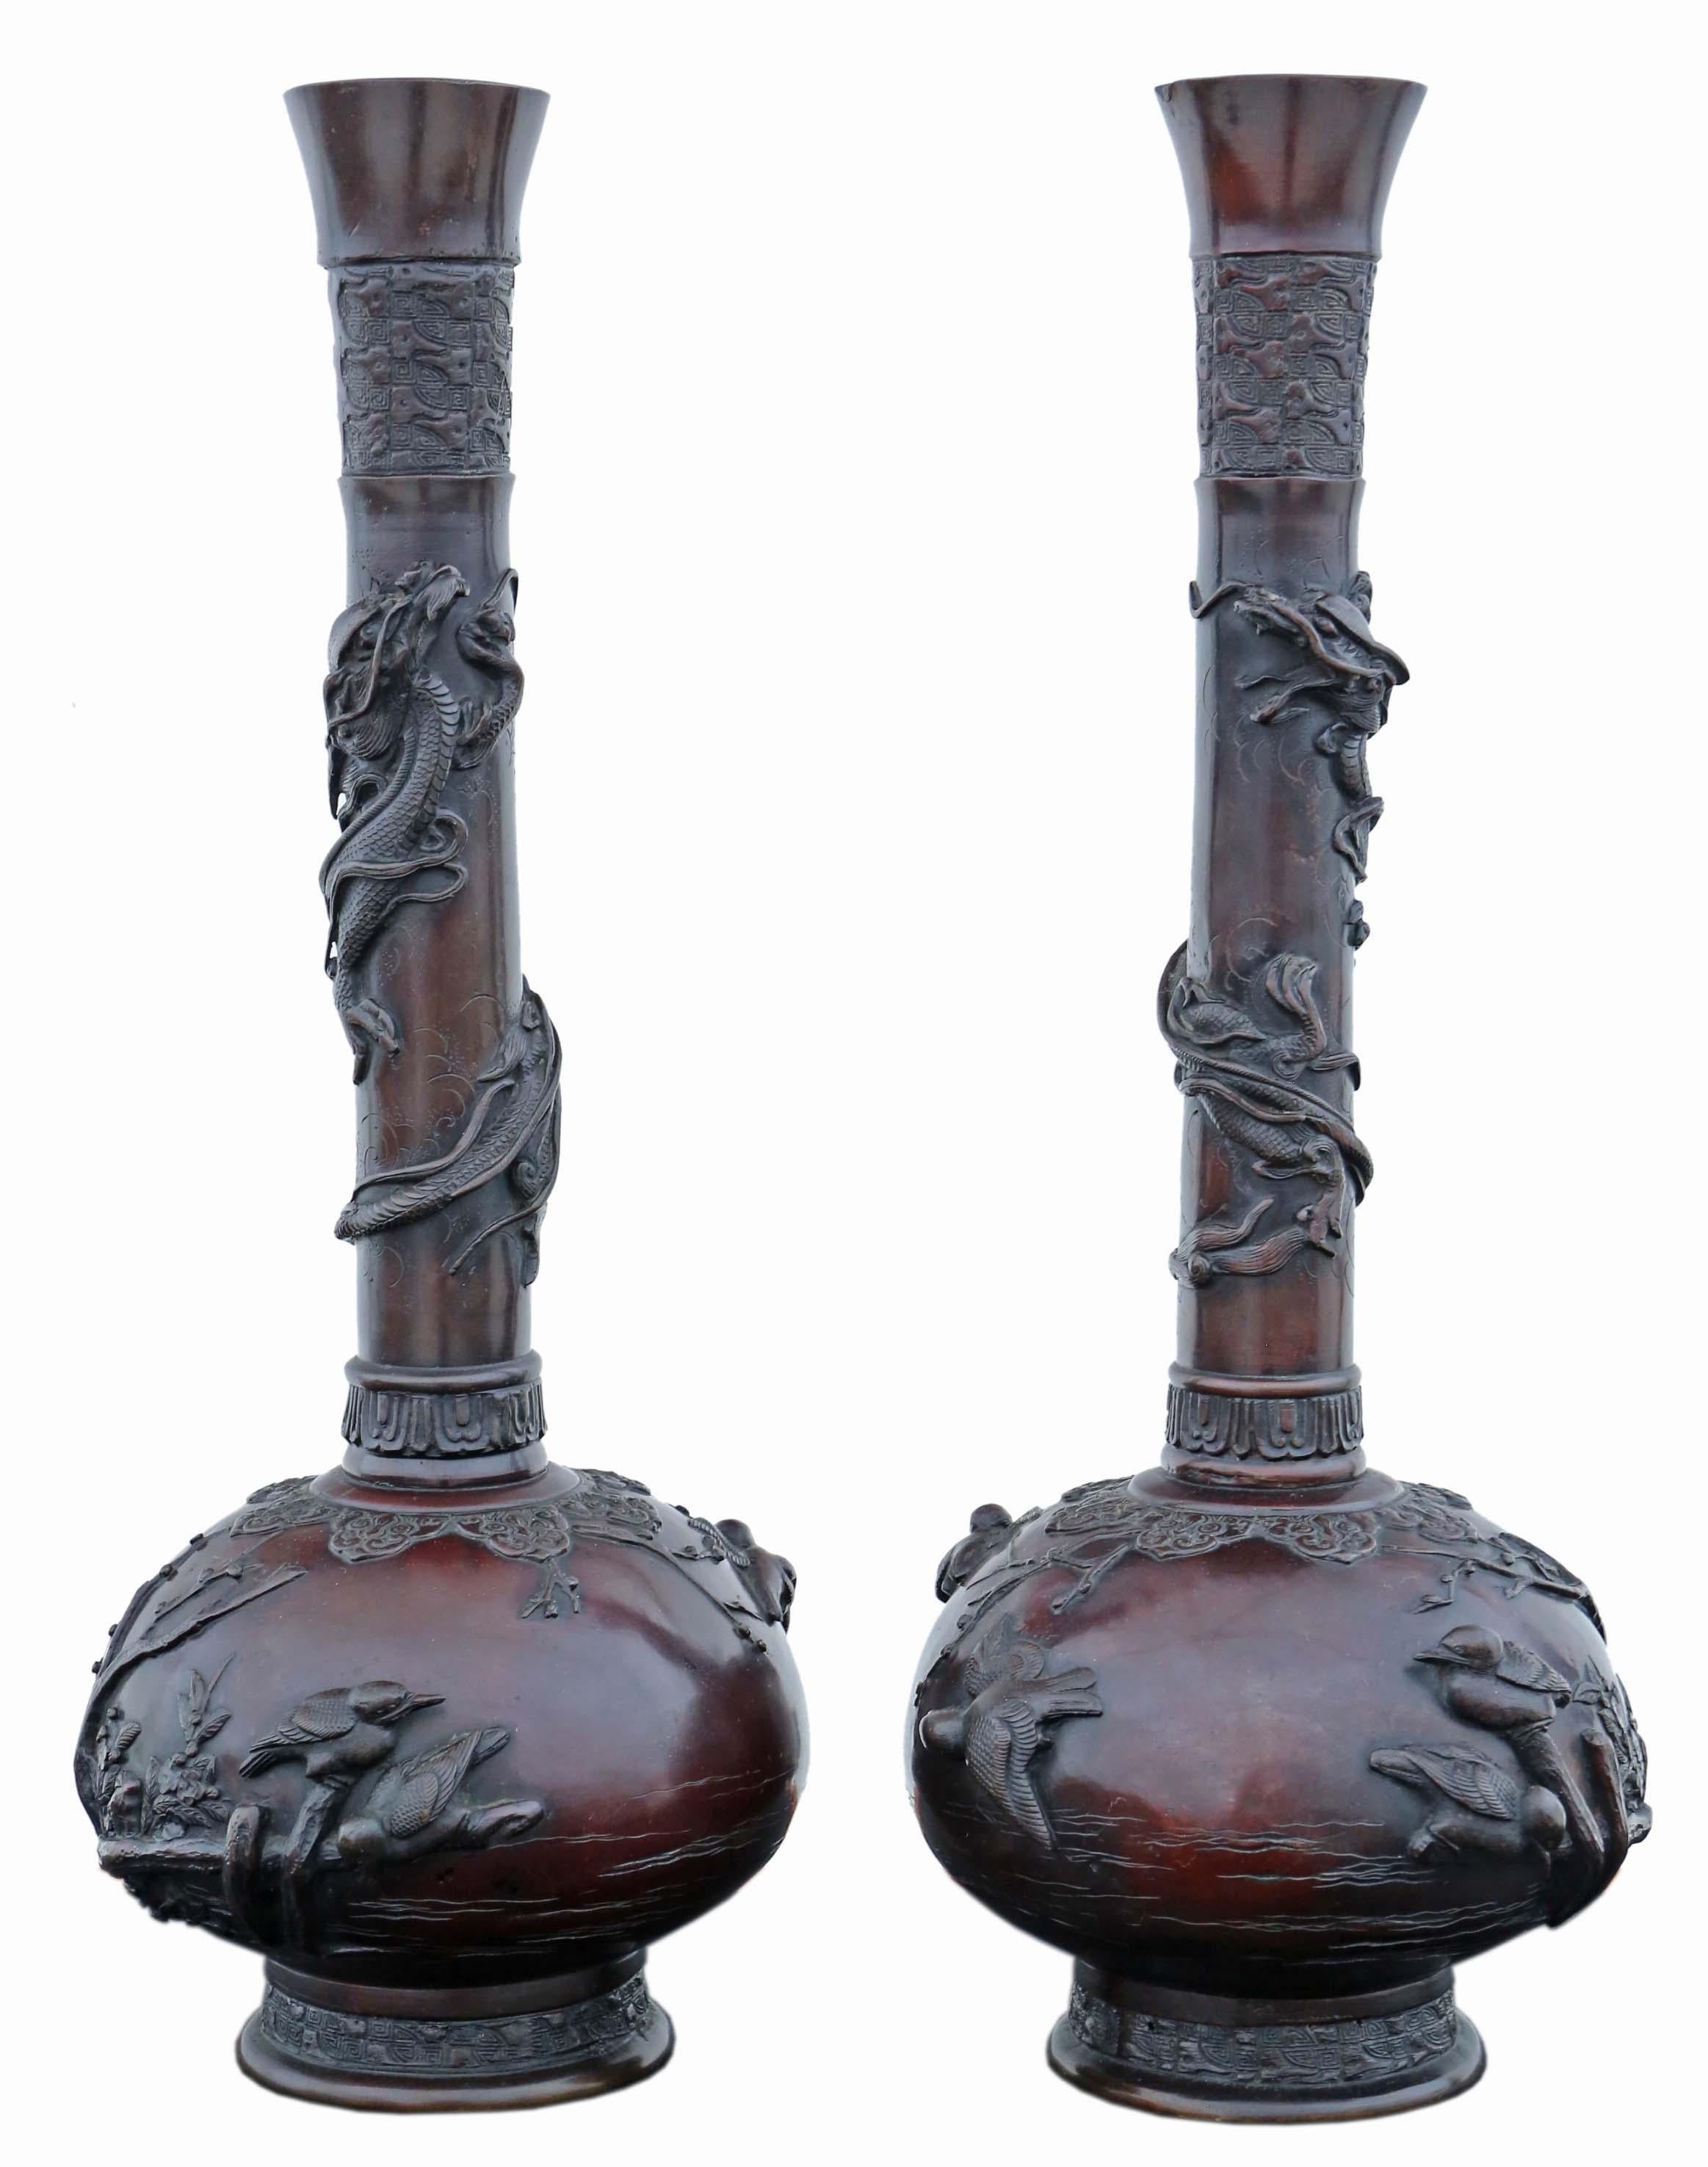 Ancienne très grande paire de vases japonais en bronze - Pièces d'artiste exquises de la période Meiji !

Ces remarquables vases japonais en bronze, datant de la période Meiji du XIXe siècle, témoignent d'un savoir-faire et d'un art de la plus haute